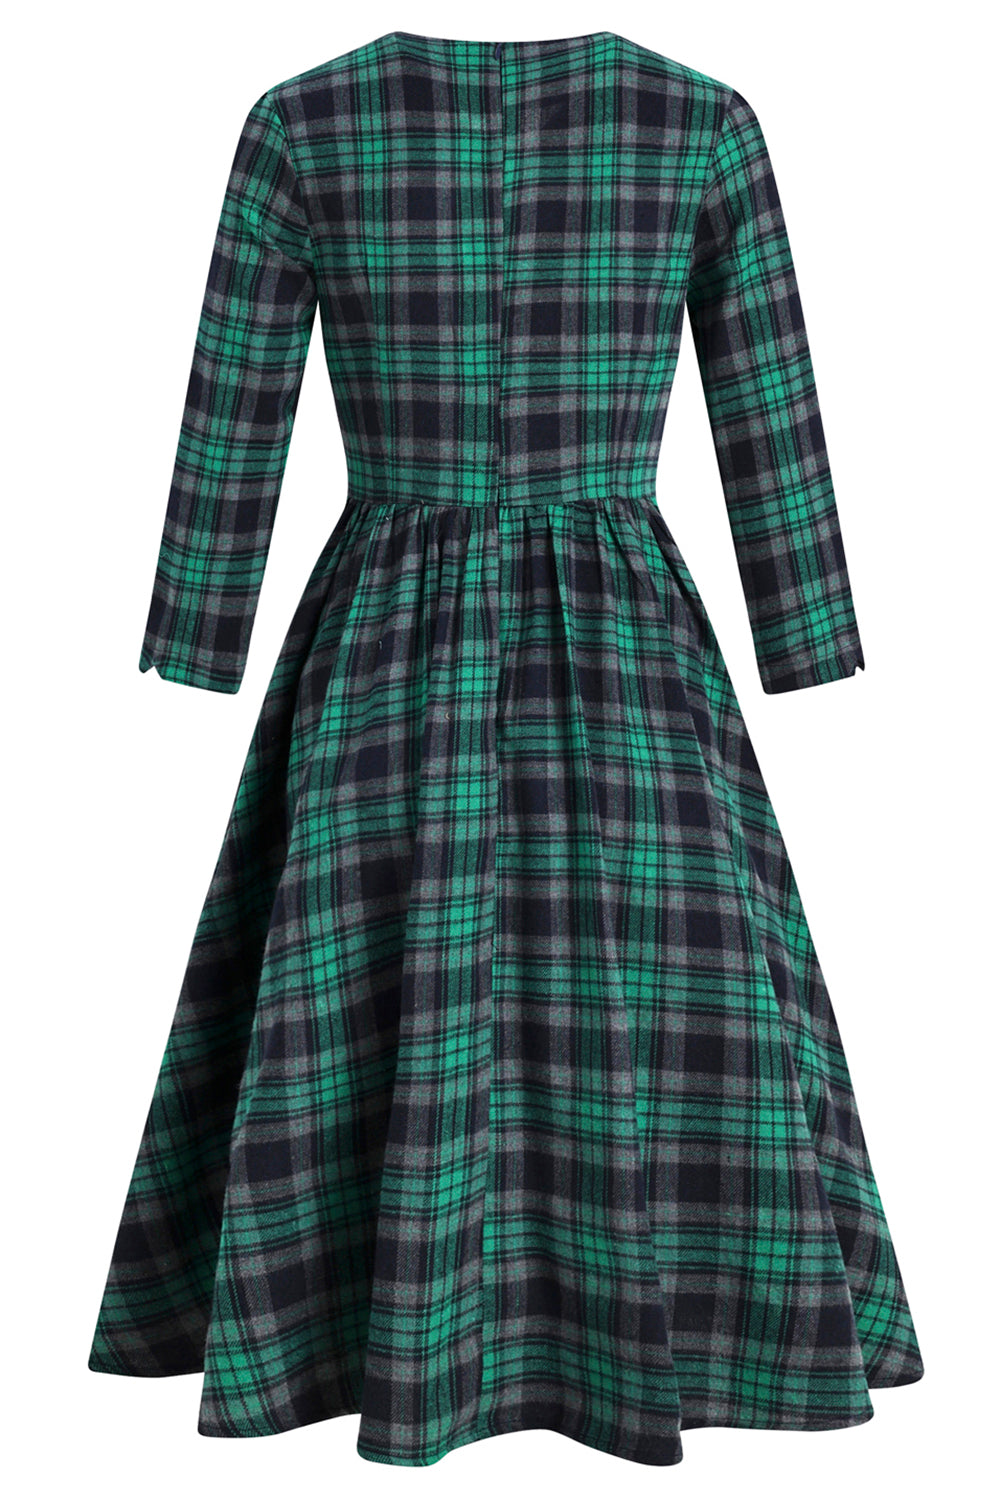 Green V Neck Plaid Vintage Dress